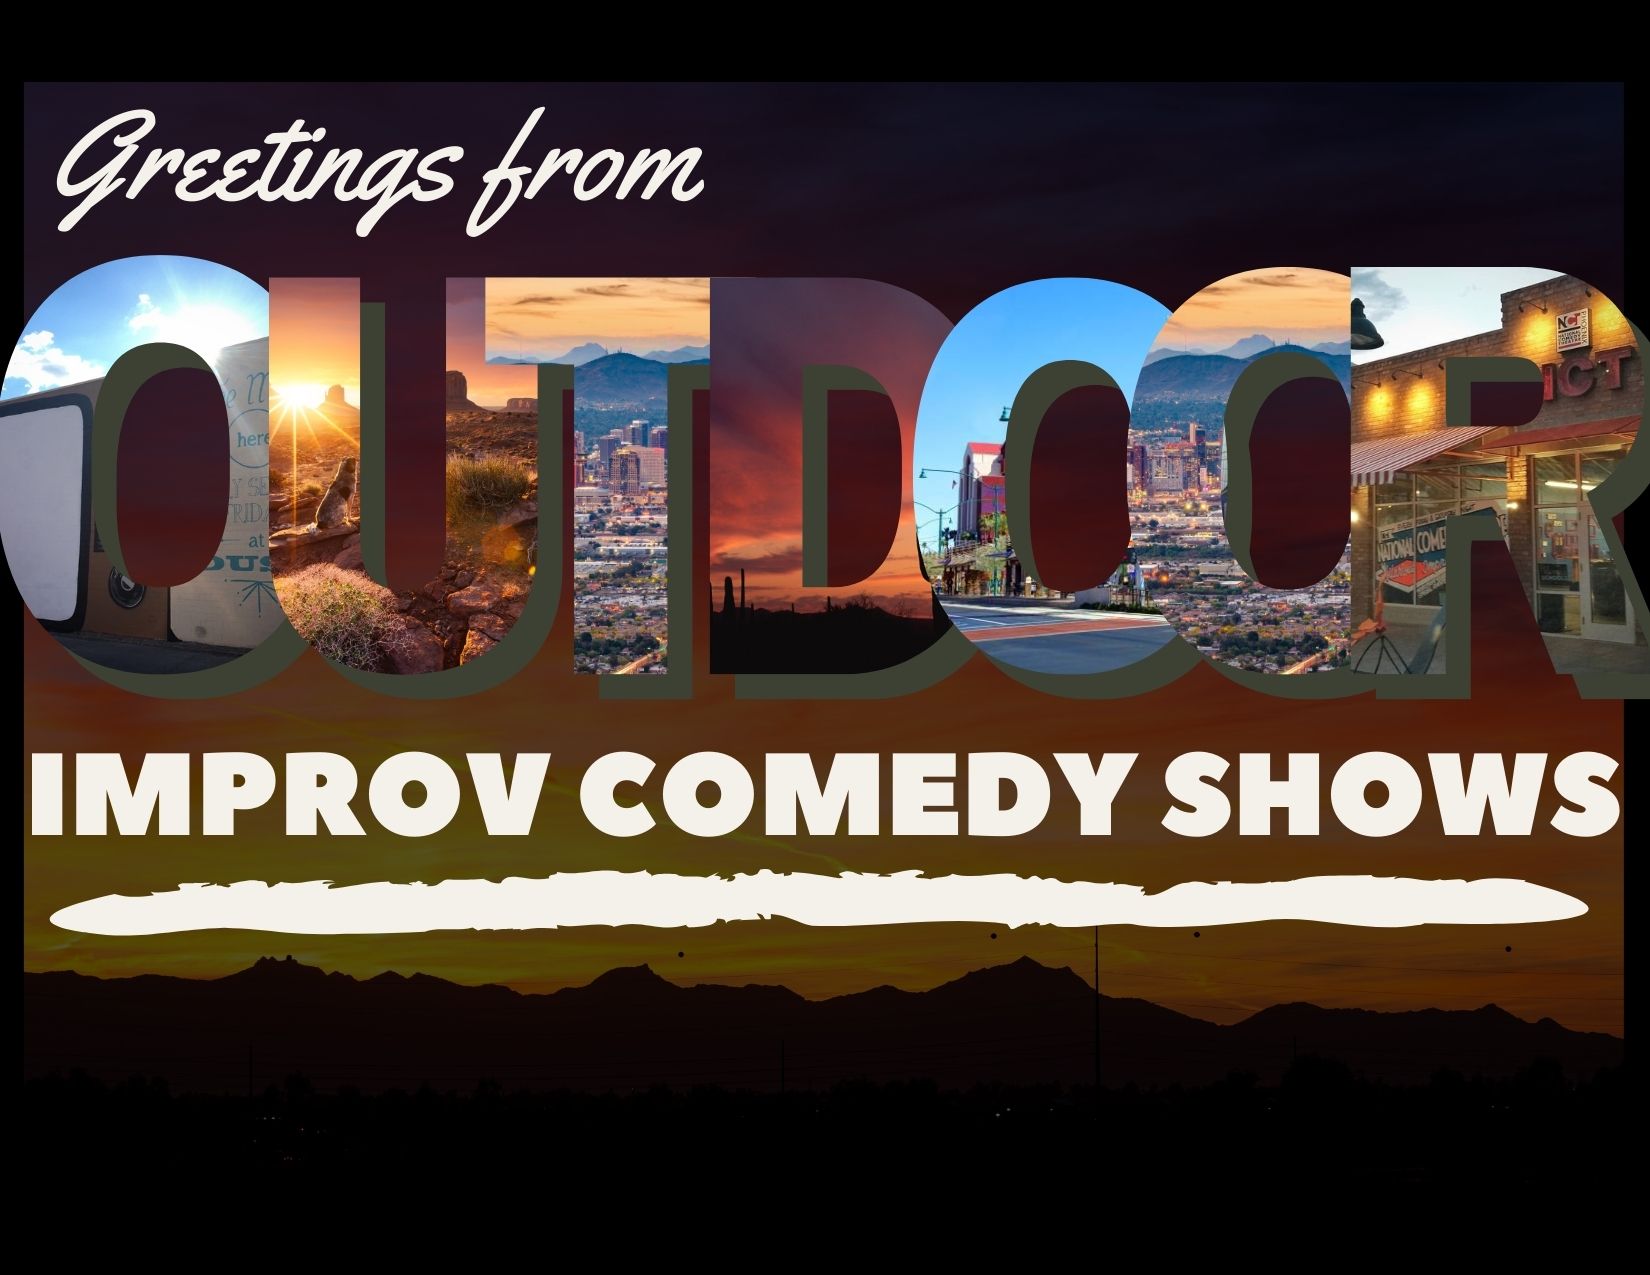 OUTDOOR Improv Comedy Shows!